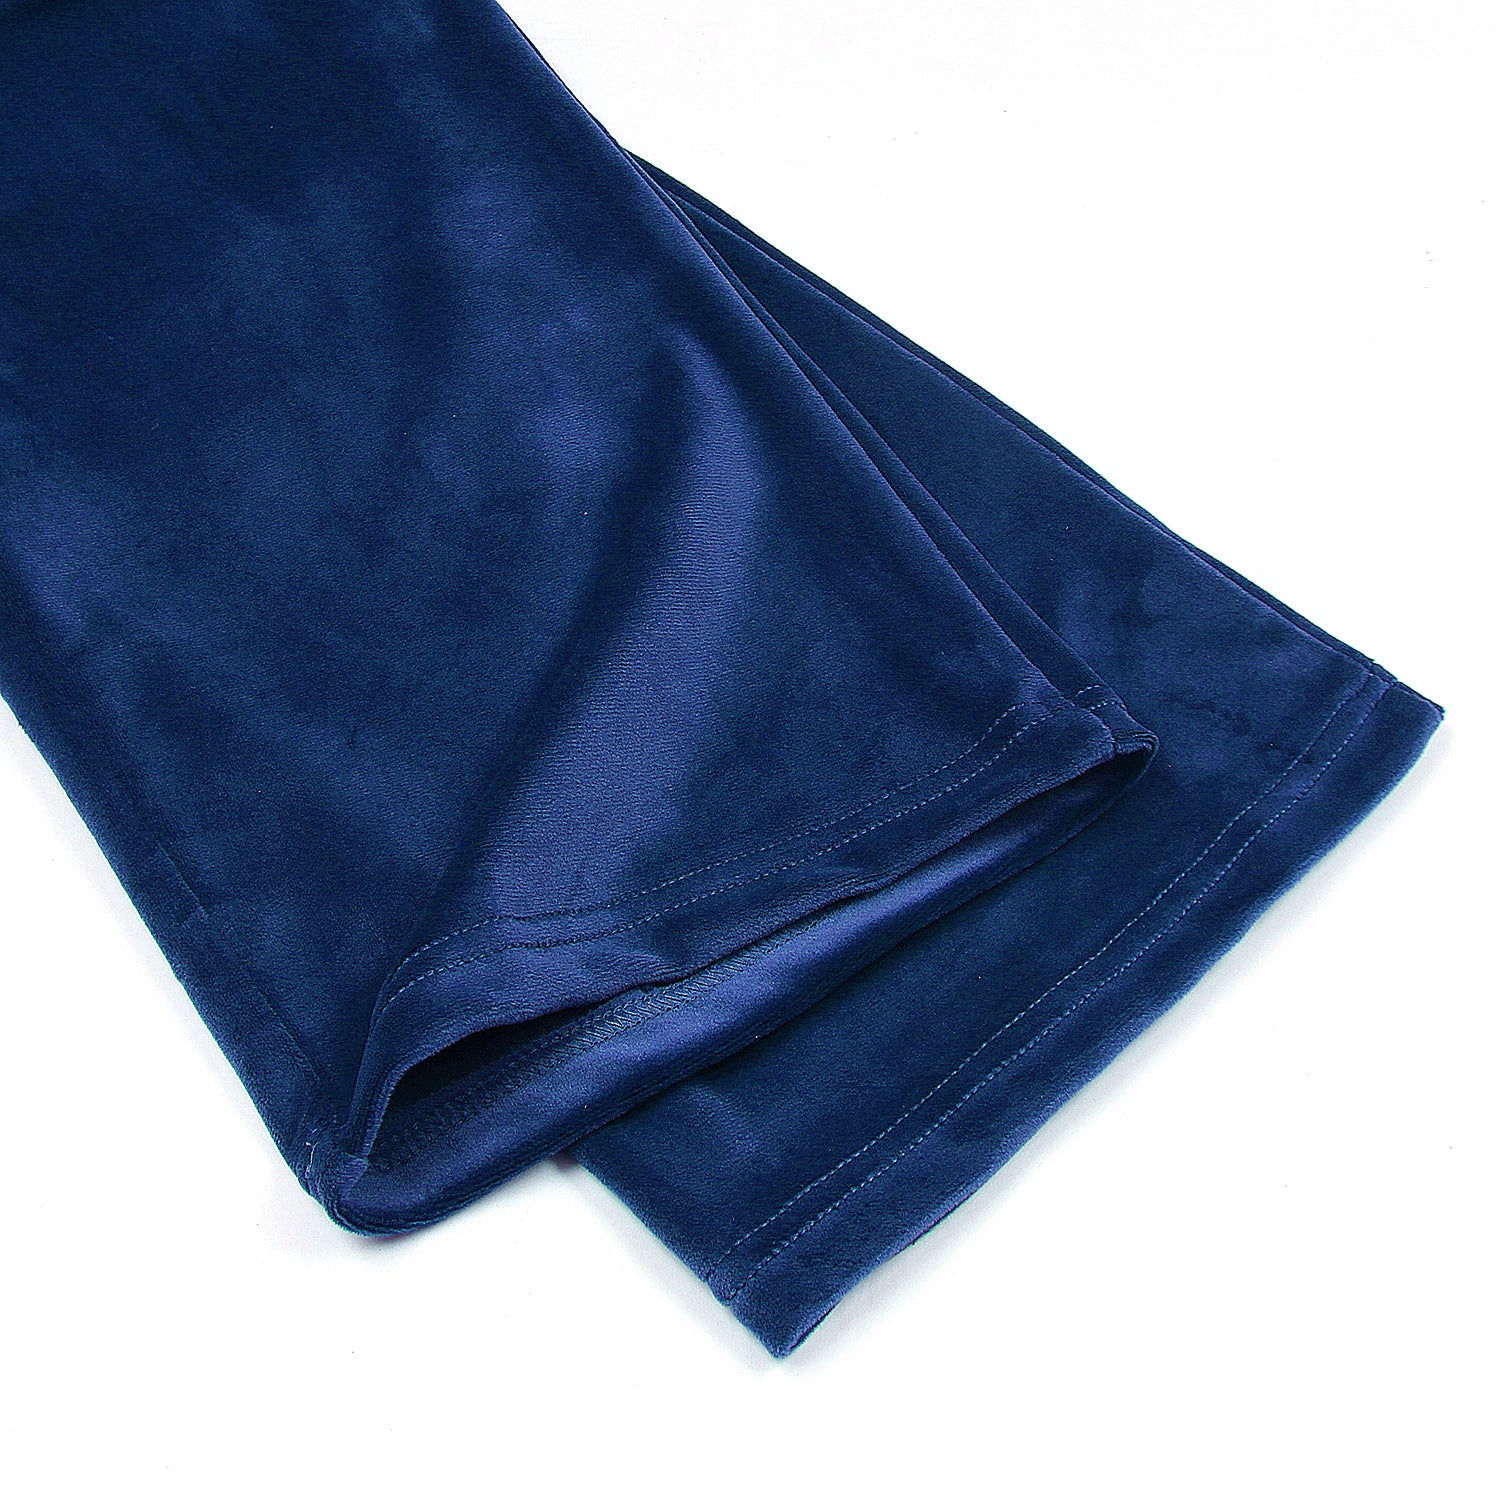 Velvet Pullover Hood Tracksuit For Women-2354-Royal Blue